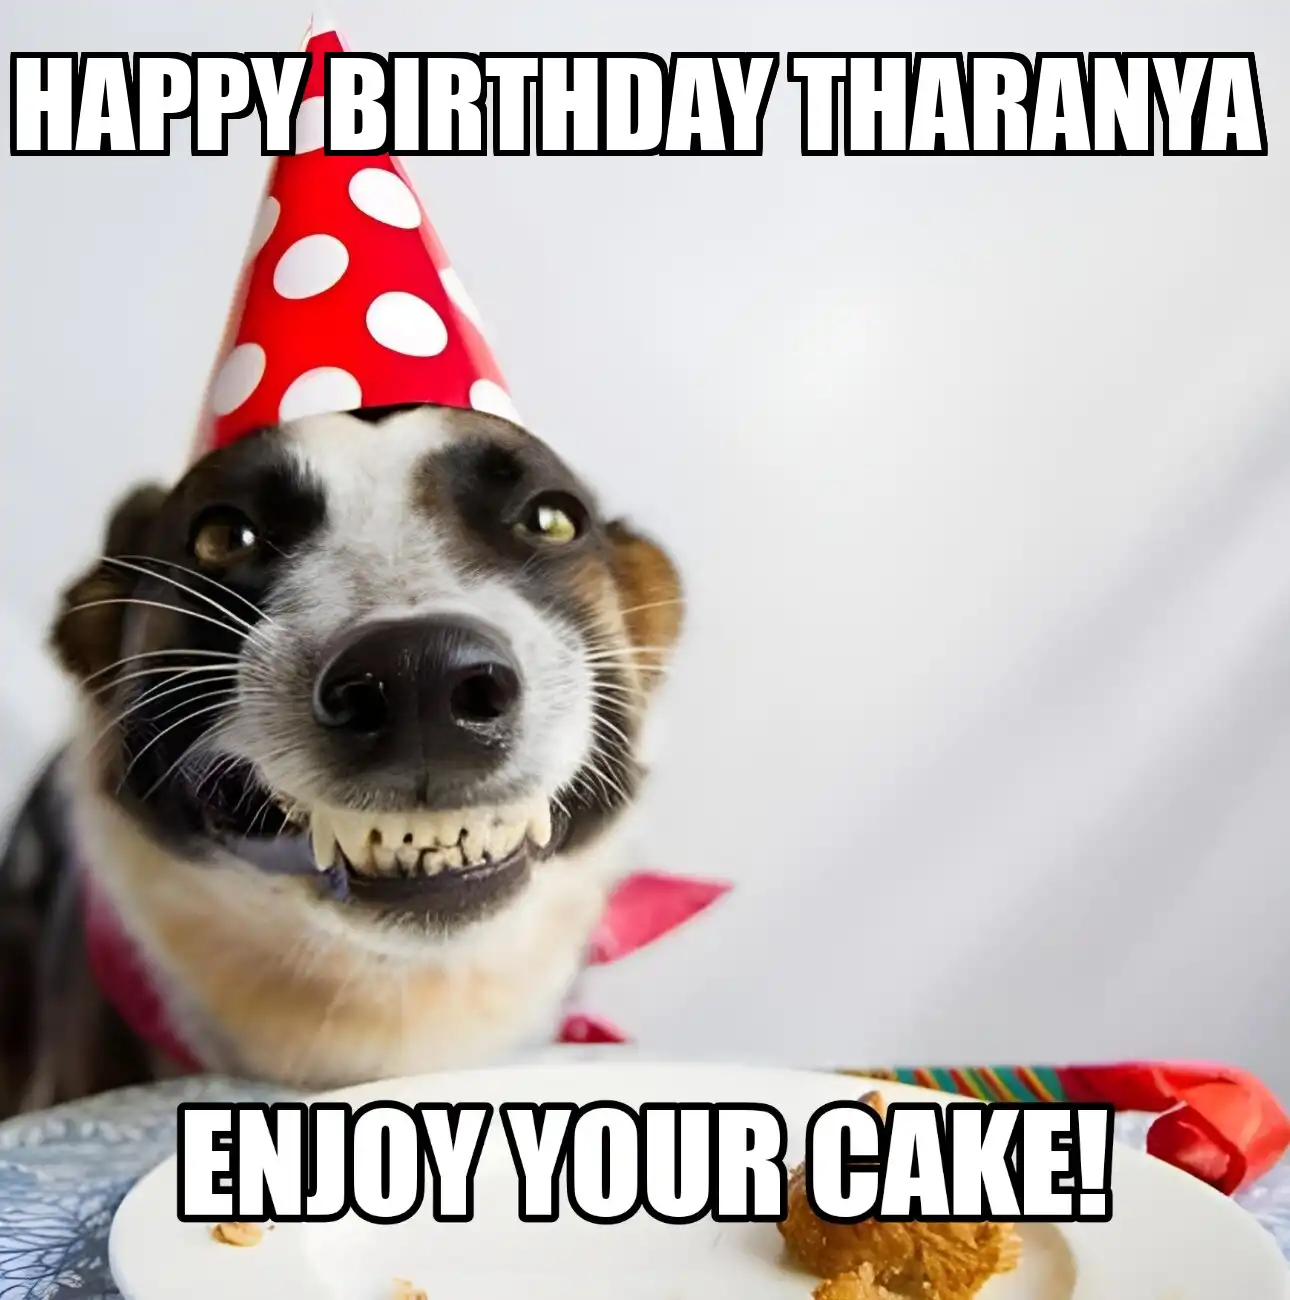 Happy Birthday Tharanya Enjoy Your Cake Dog Meme